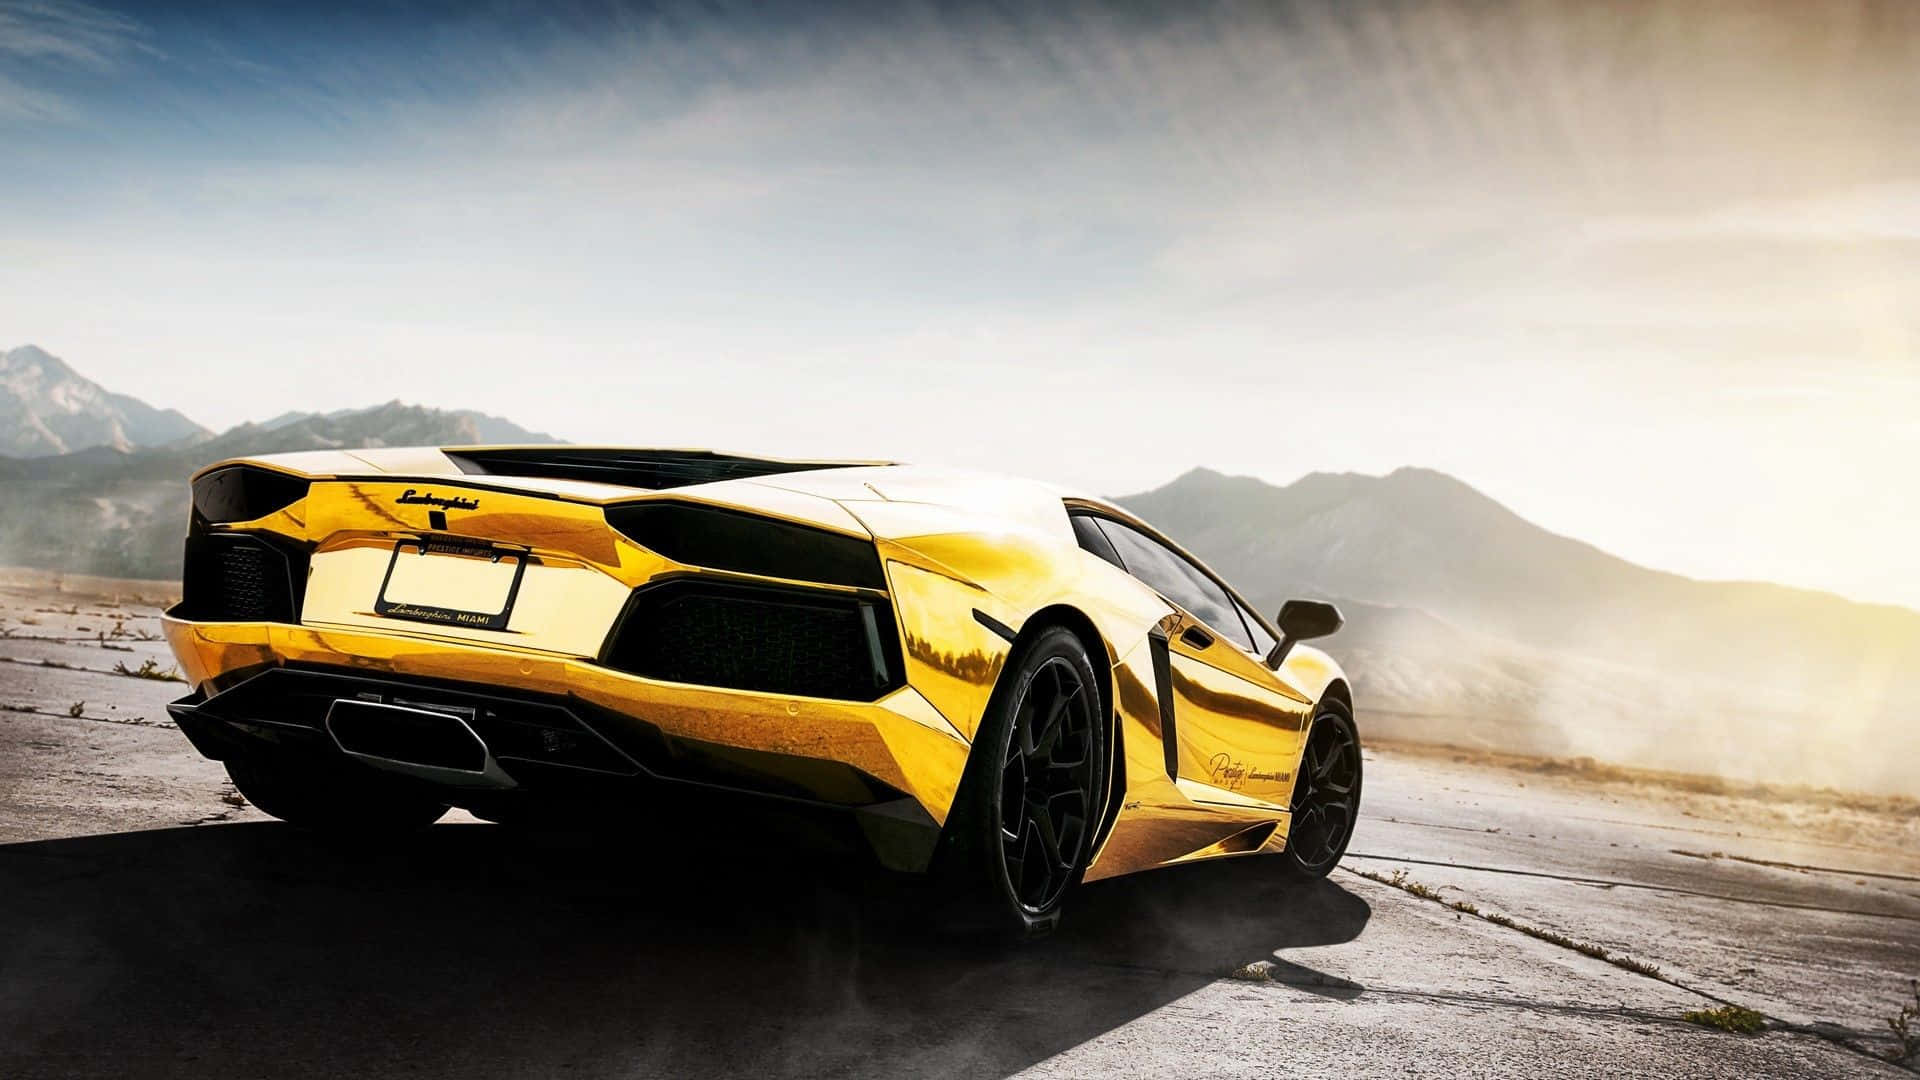 A Gold Lamborghini Puts the Shine into Your Drive Wallpaper